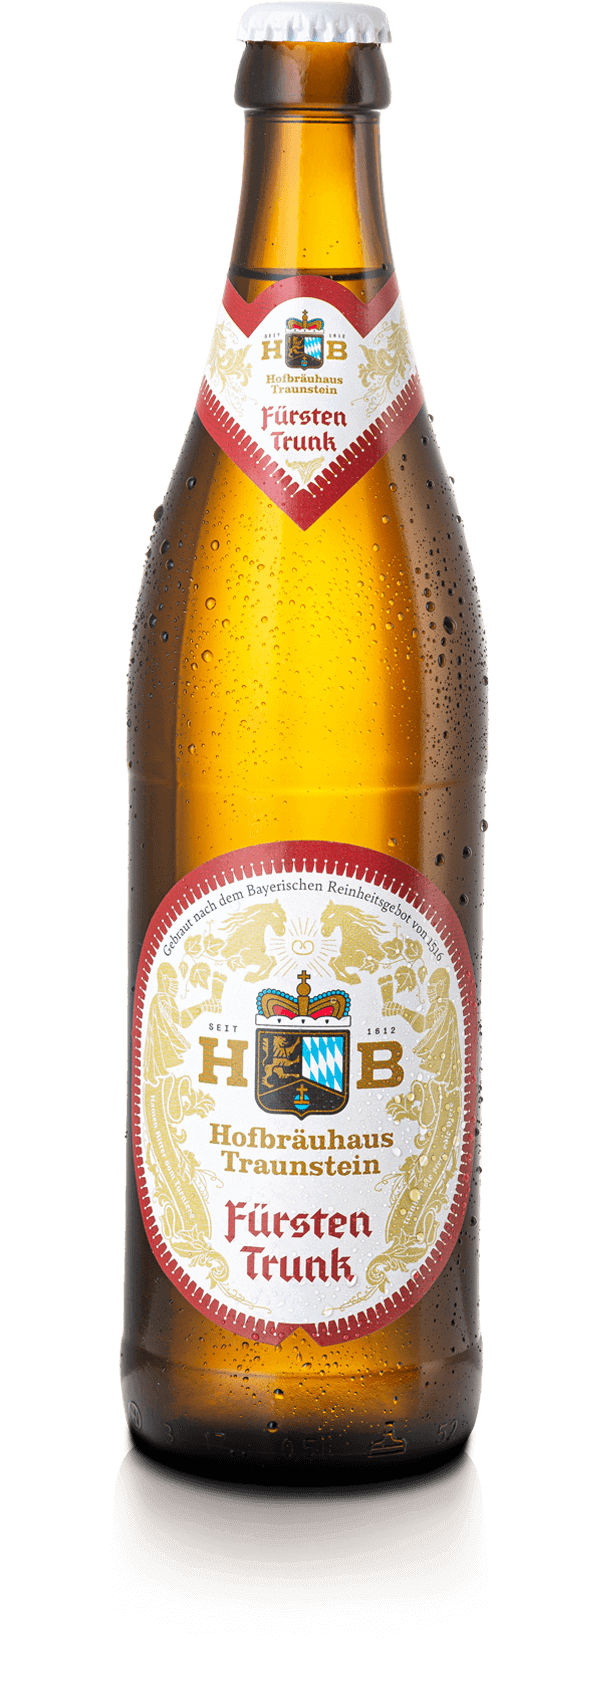 Hofbräuhaus Traunstein- Fürstentrunk Festbier 5.7% ABV 500ml Bottle